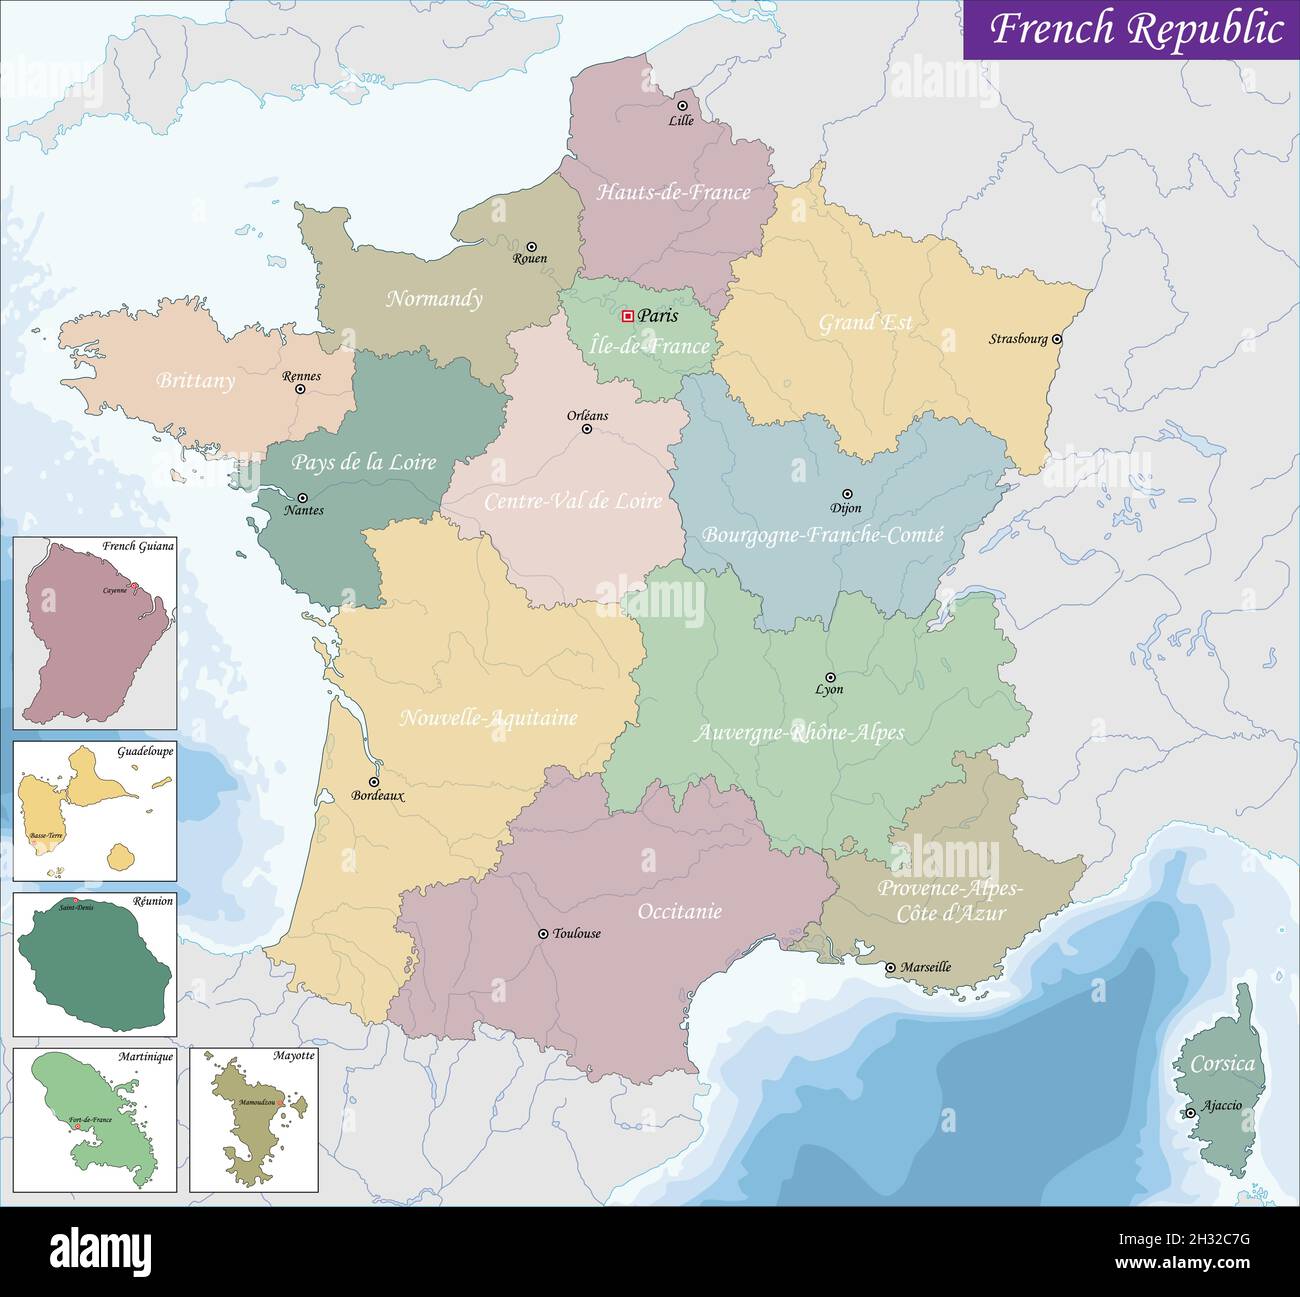 La France est un pays avec un territoire en Europe occidentale Illustration de Vecteur